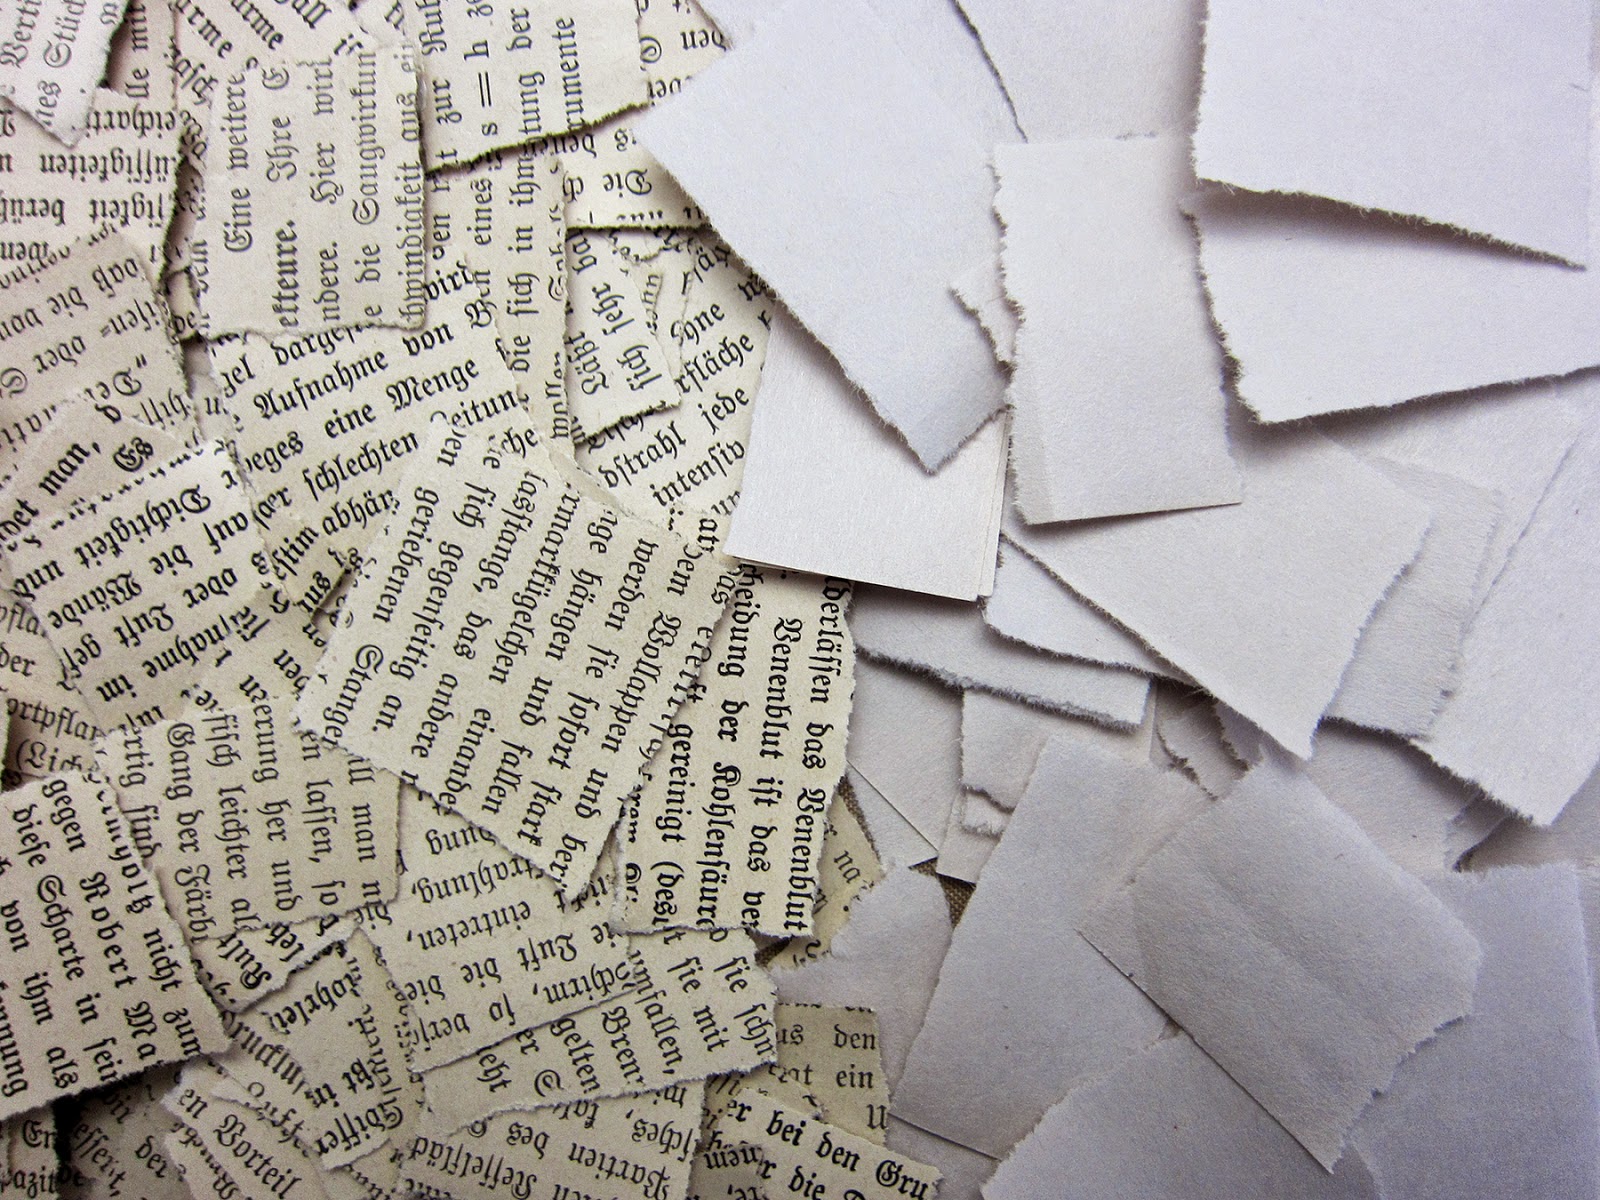 газеты и письма лежали на столе вперемешку